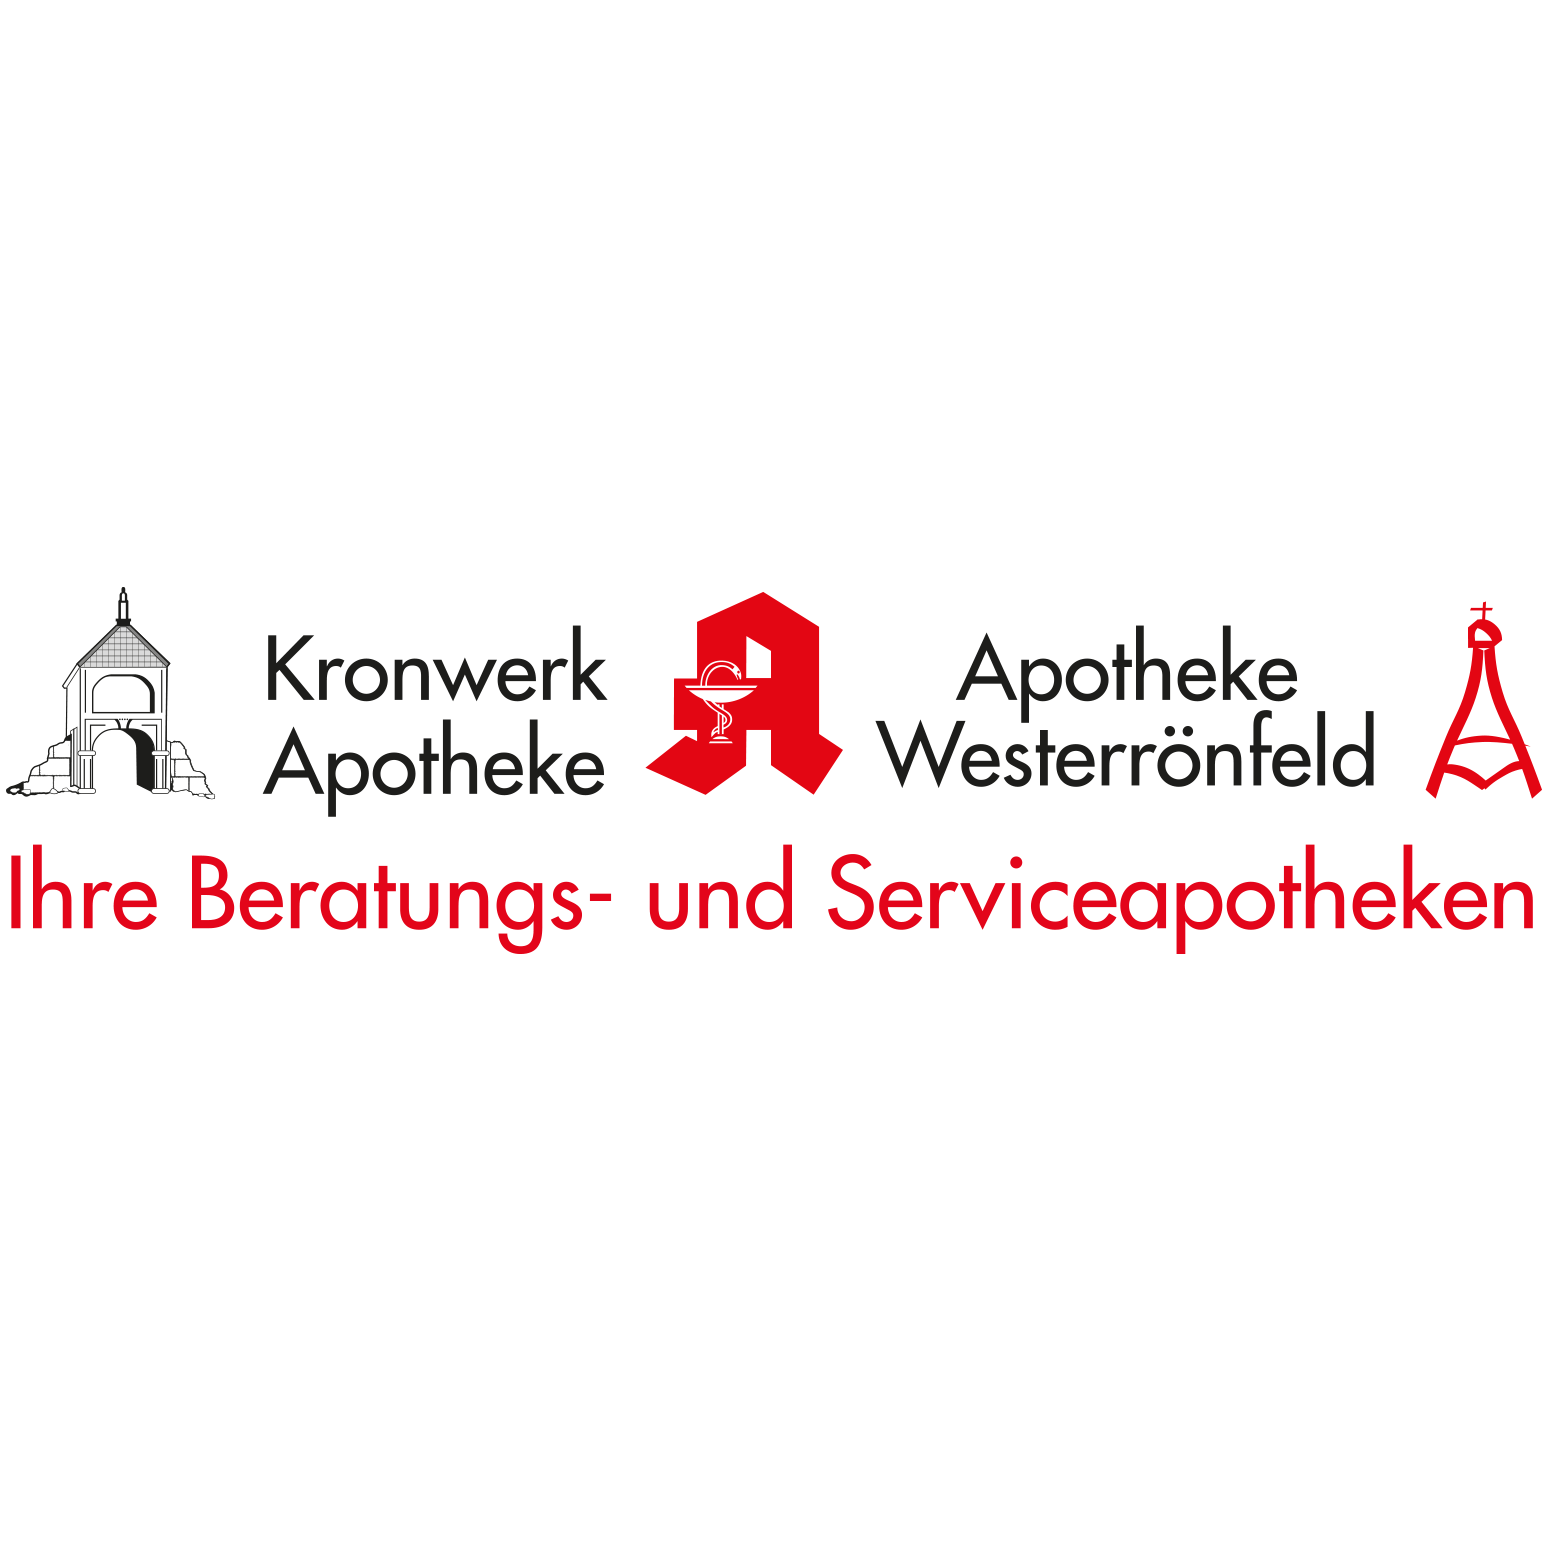 Apotheke Westerrönfeld in Westerrönfeld - Logo